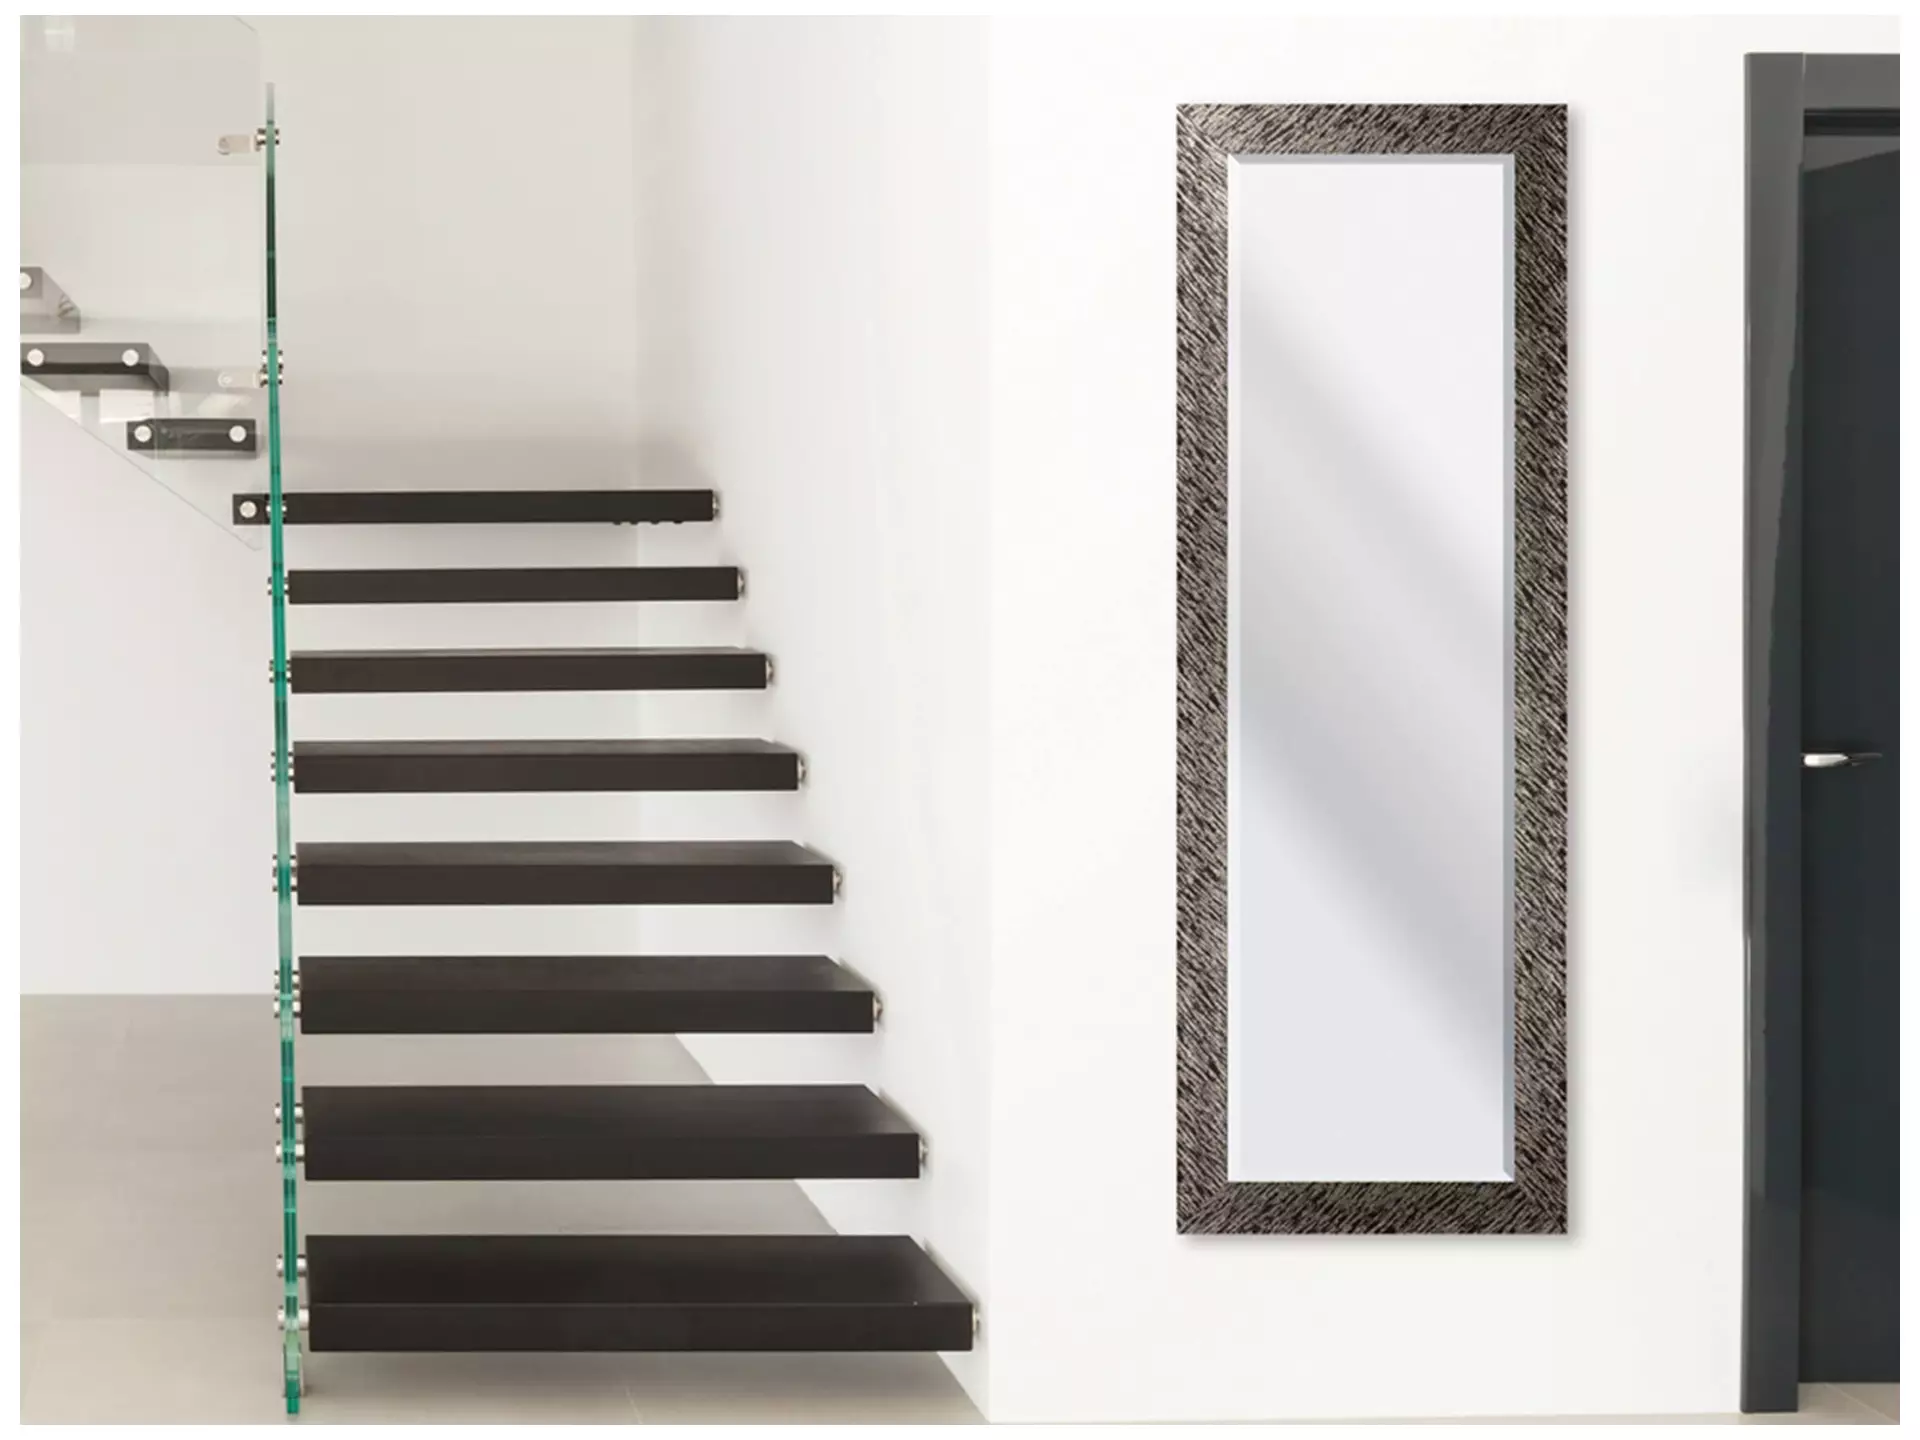 Spiegel Mit Rahmen, 53 x 153 cm image LAND